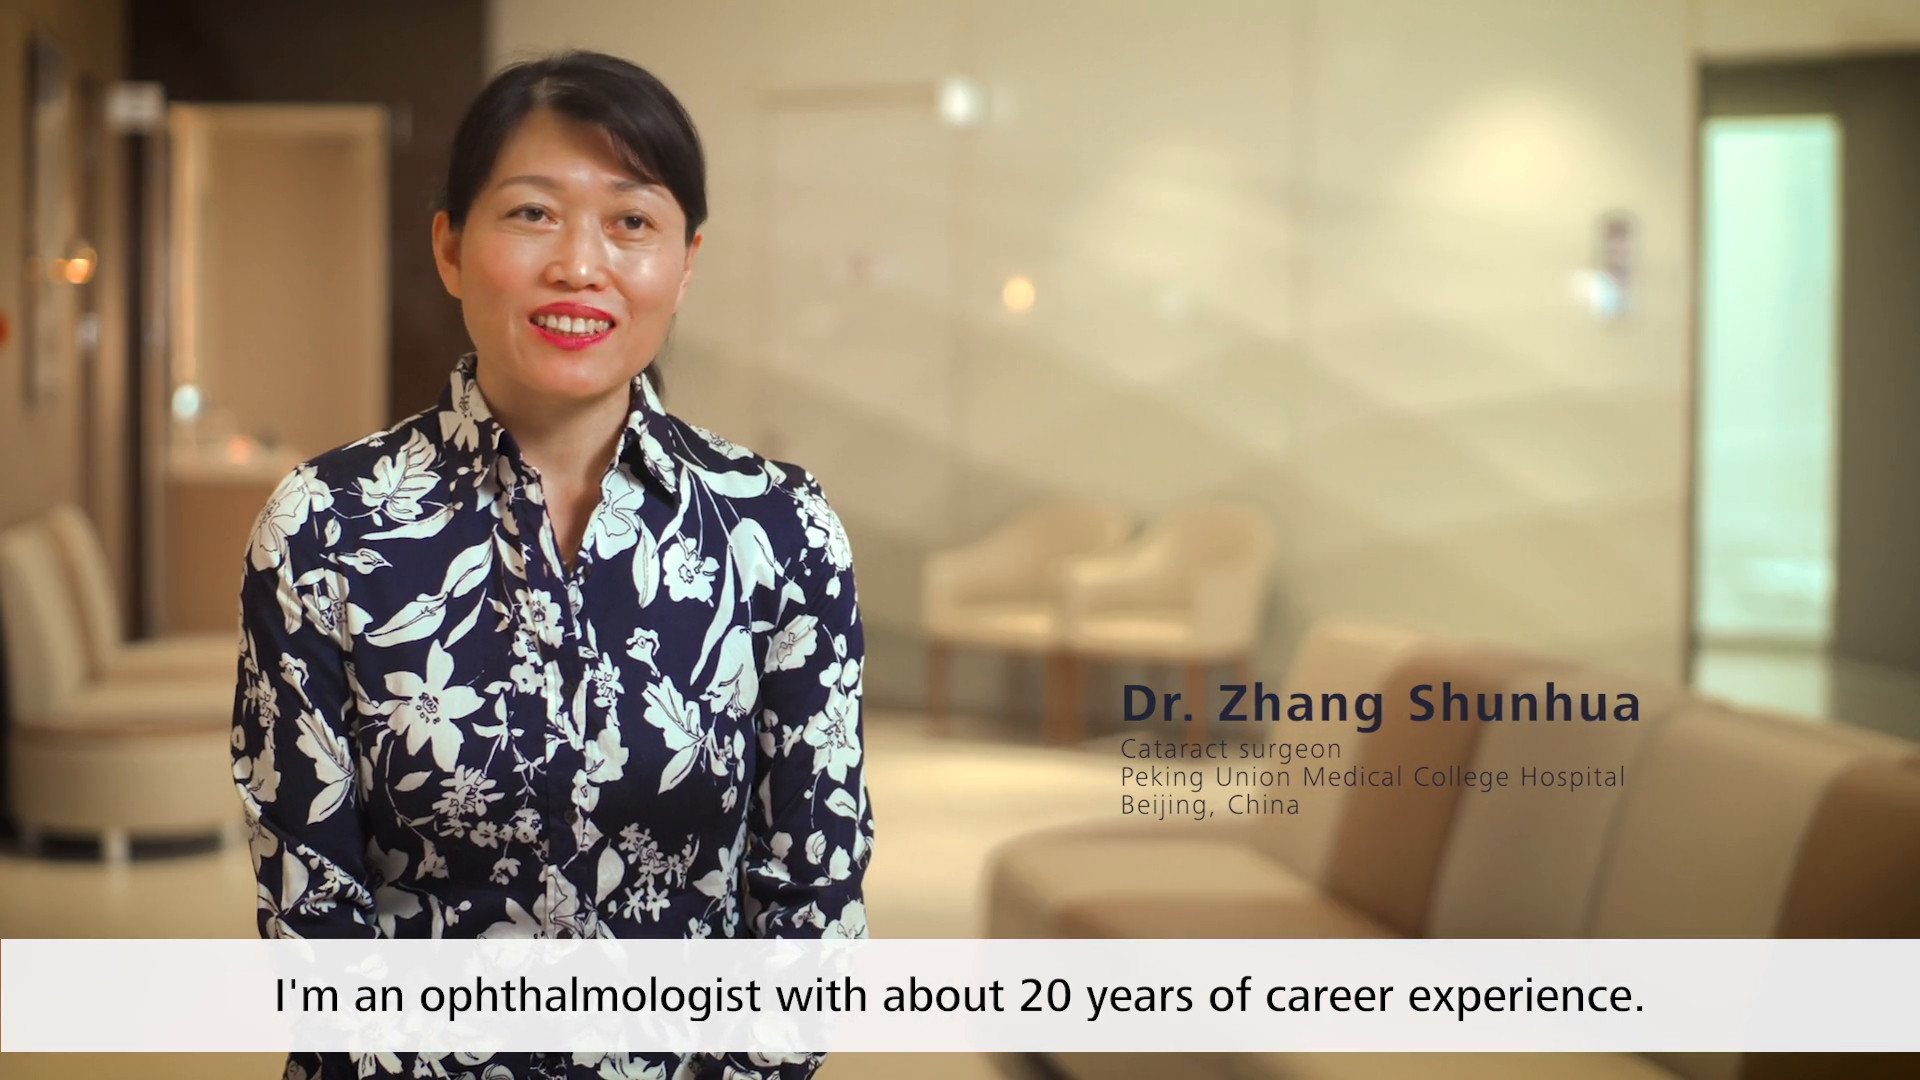 Dr. Zhang Shunhua